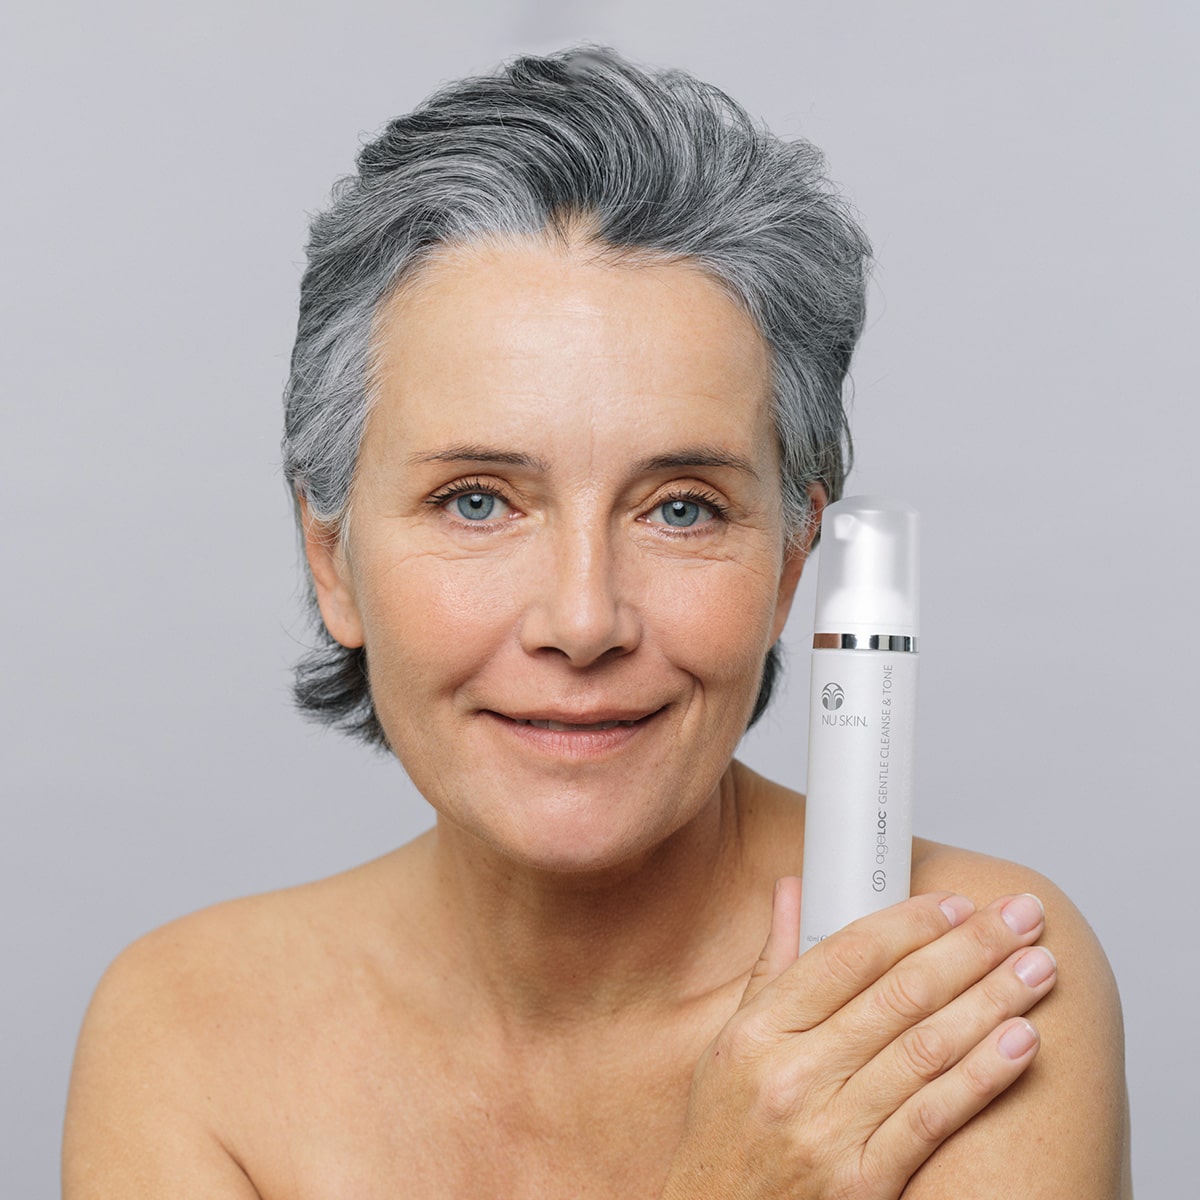 Frau mittleren Alters mit grauer Kurzhaarfrisur hält ageLOC Gentle Cleanse & Tone Dosierspender lächelnd neben ihr Gesicht.